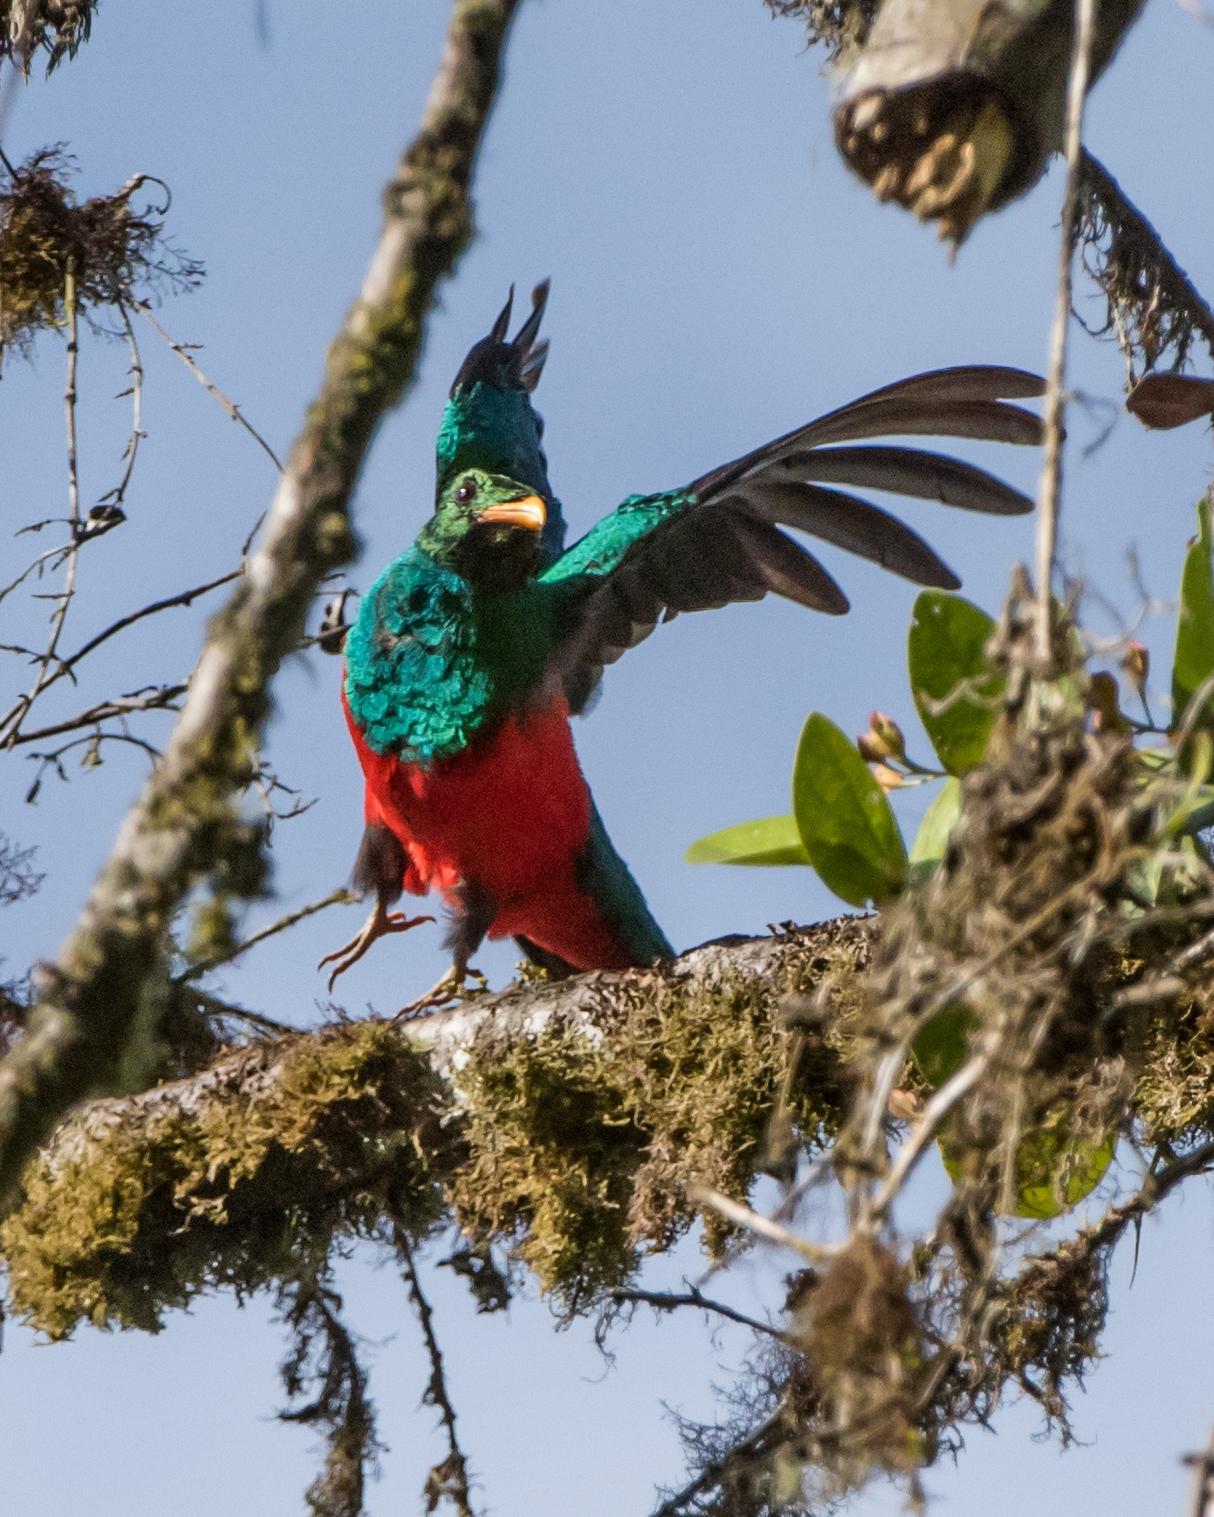 Golden-headed Quetzal Photo by Harold Davis